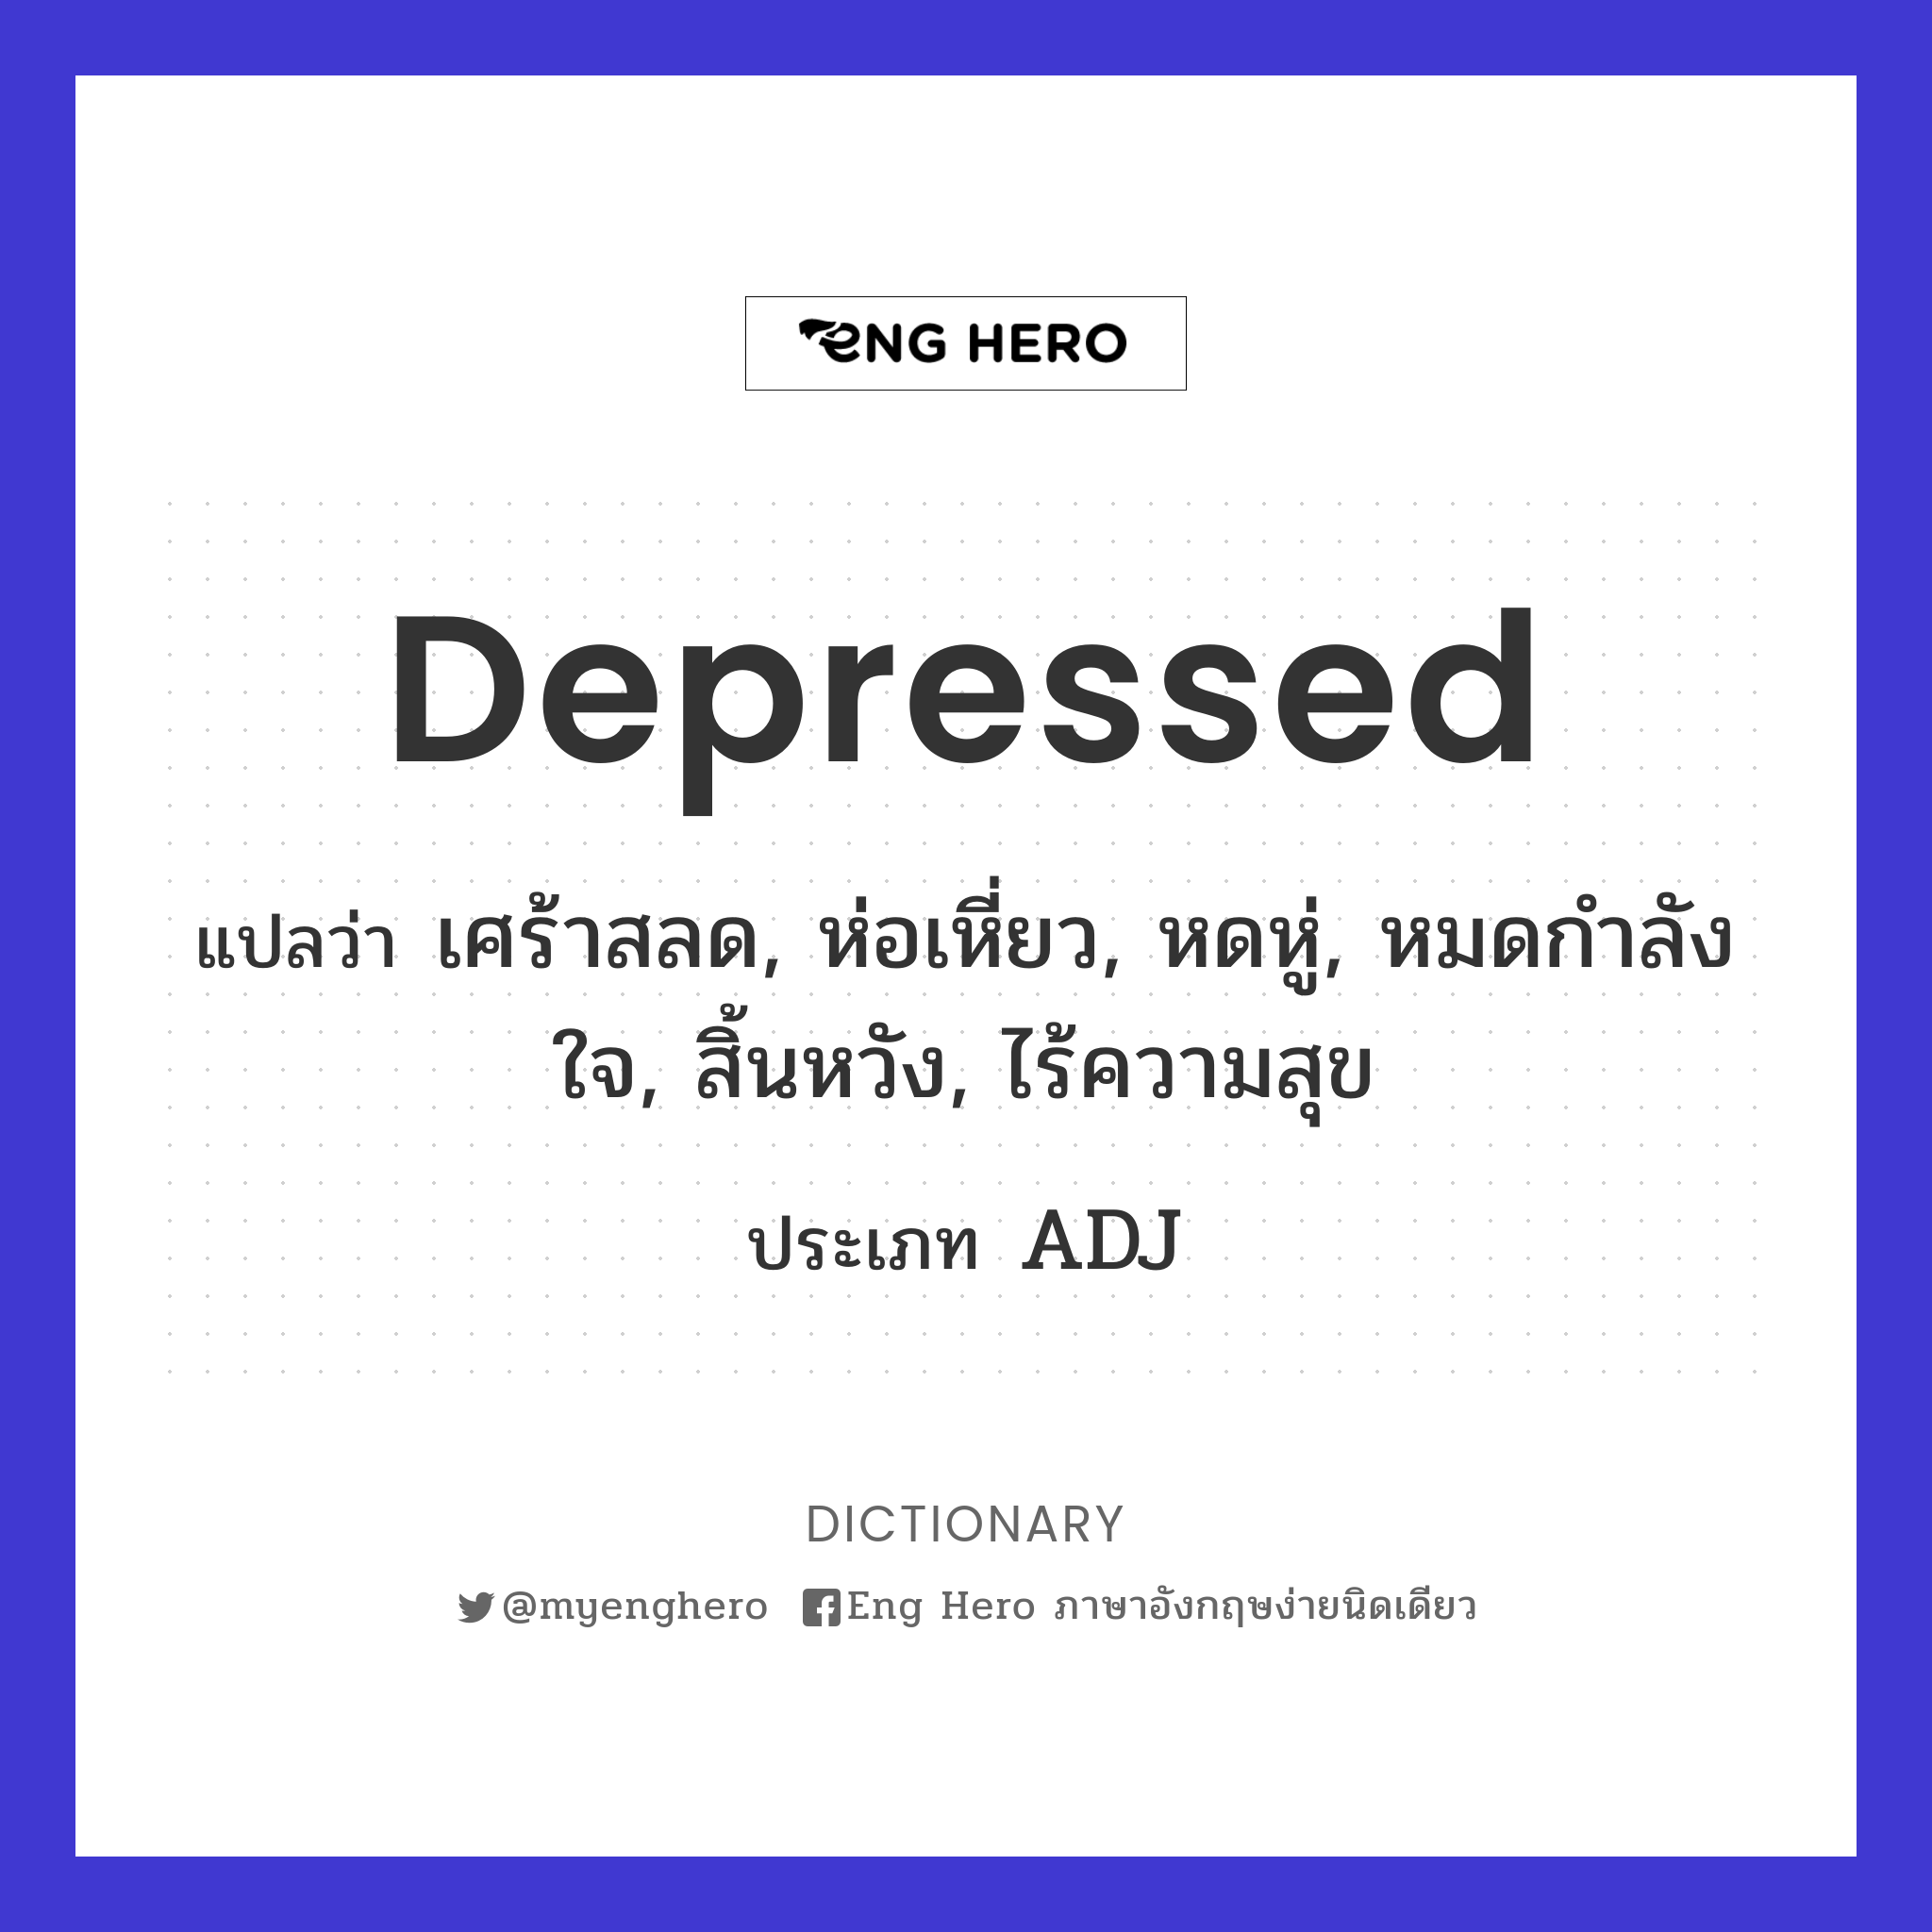 Depressed แปลว่า เศร้าสลด, ห่อเหี่ยว, หดหู่, หมดกำลังใจ, สิ้นหวัง,  ไร้ความสุข | Eng Hero เรียนภาษาอังกฤษ ออนไลน์ ฟรี